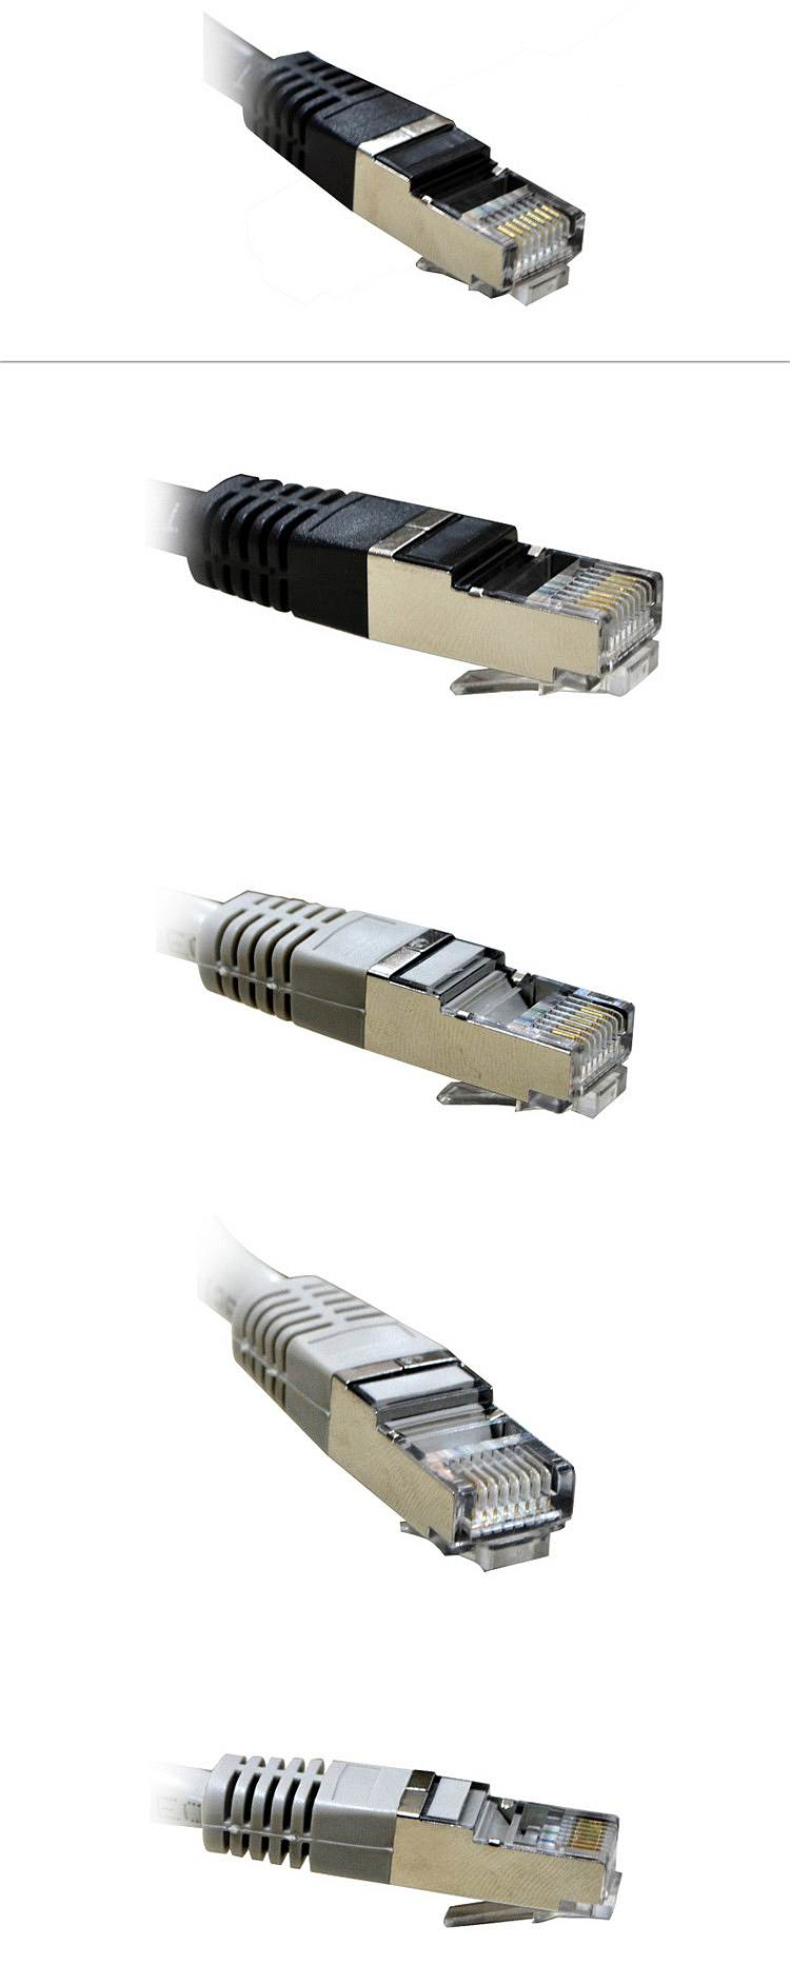 酷比客 L-CUBIC 六类单层屏蔽网线 LCLN6RRECSBU-1M 1M 用于电脑 路由器 交换机等设备之间相互连接 六类单层屏蔽网线 